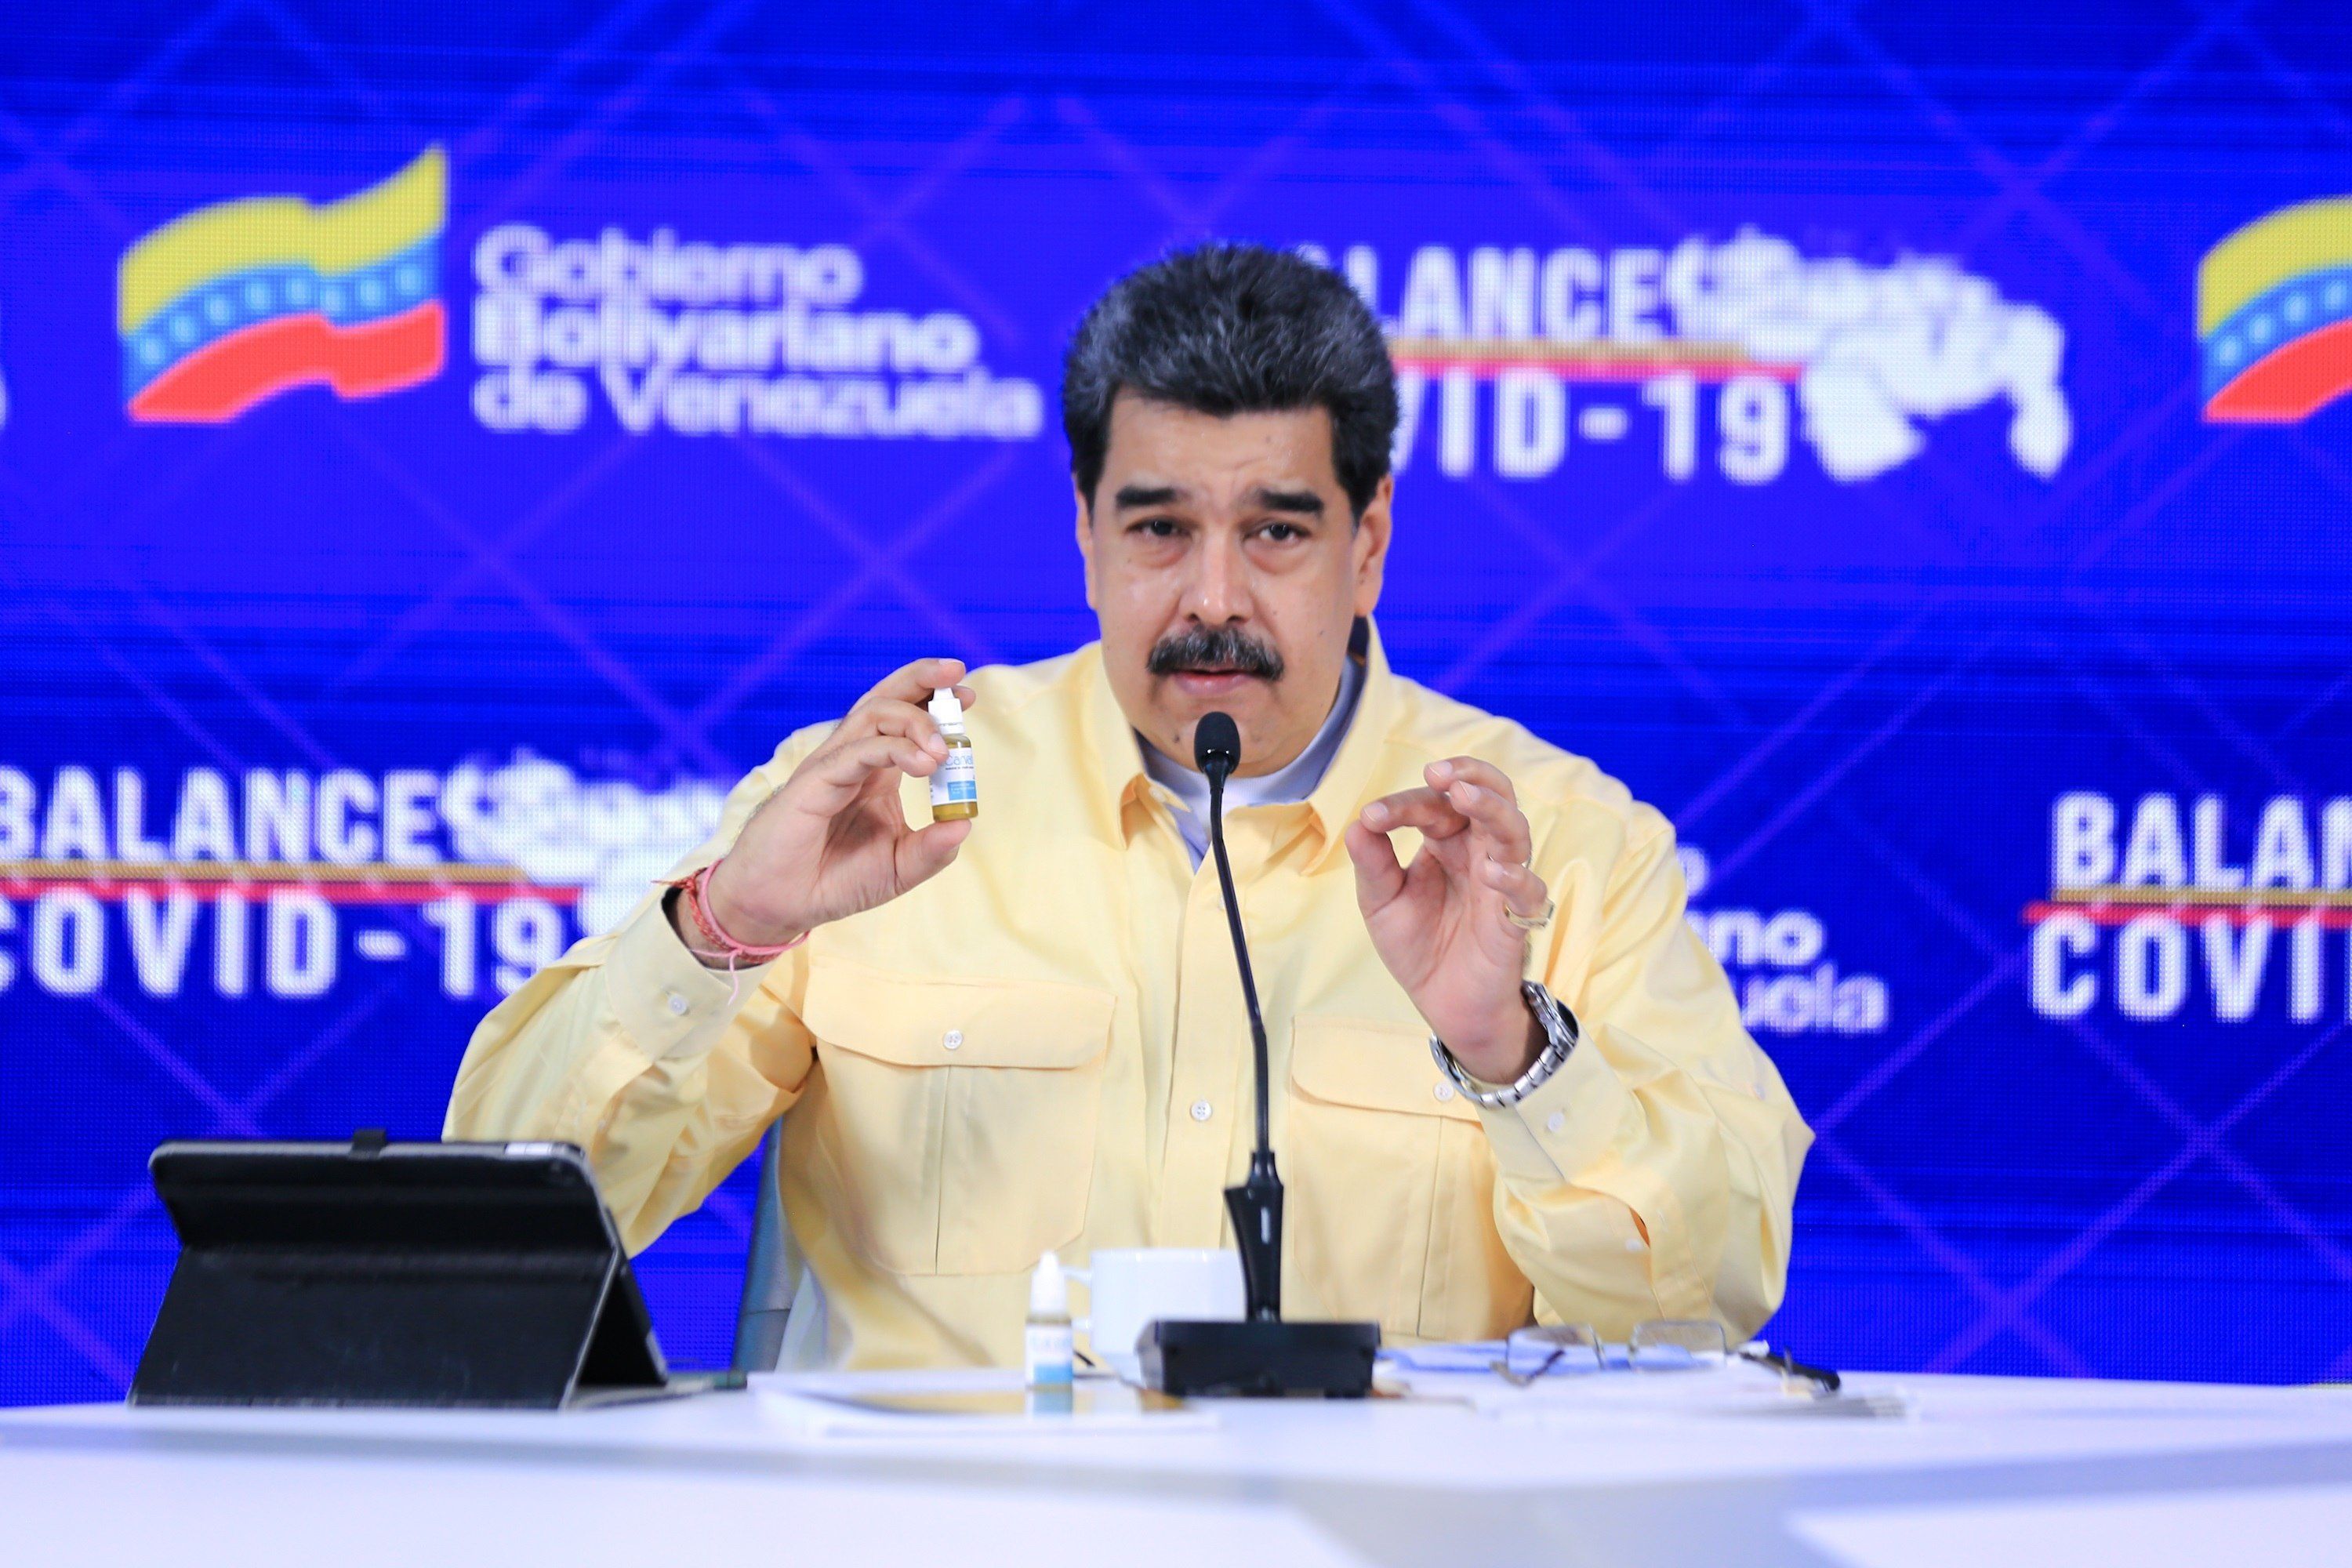 Según Maduro, el medicamento "neutraliza el COVID-19 en un 100 % al usarlas cada cuatro horas" (Efe) 